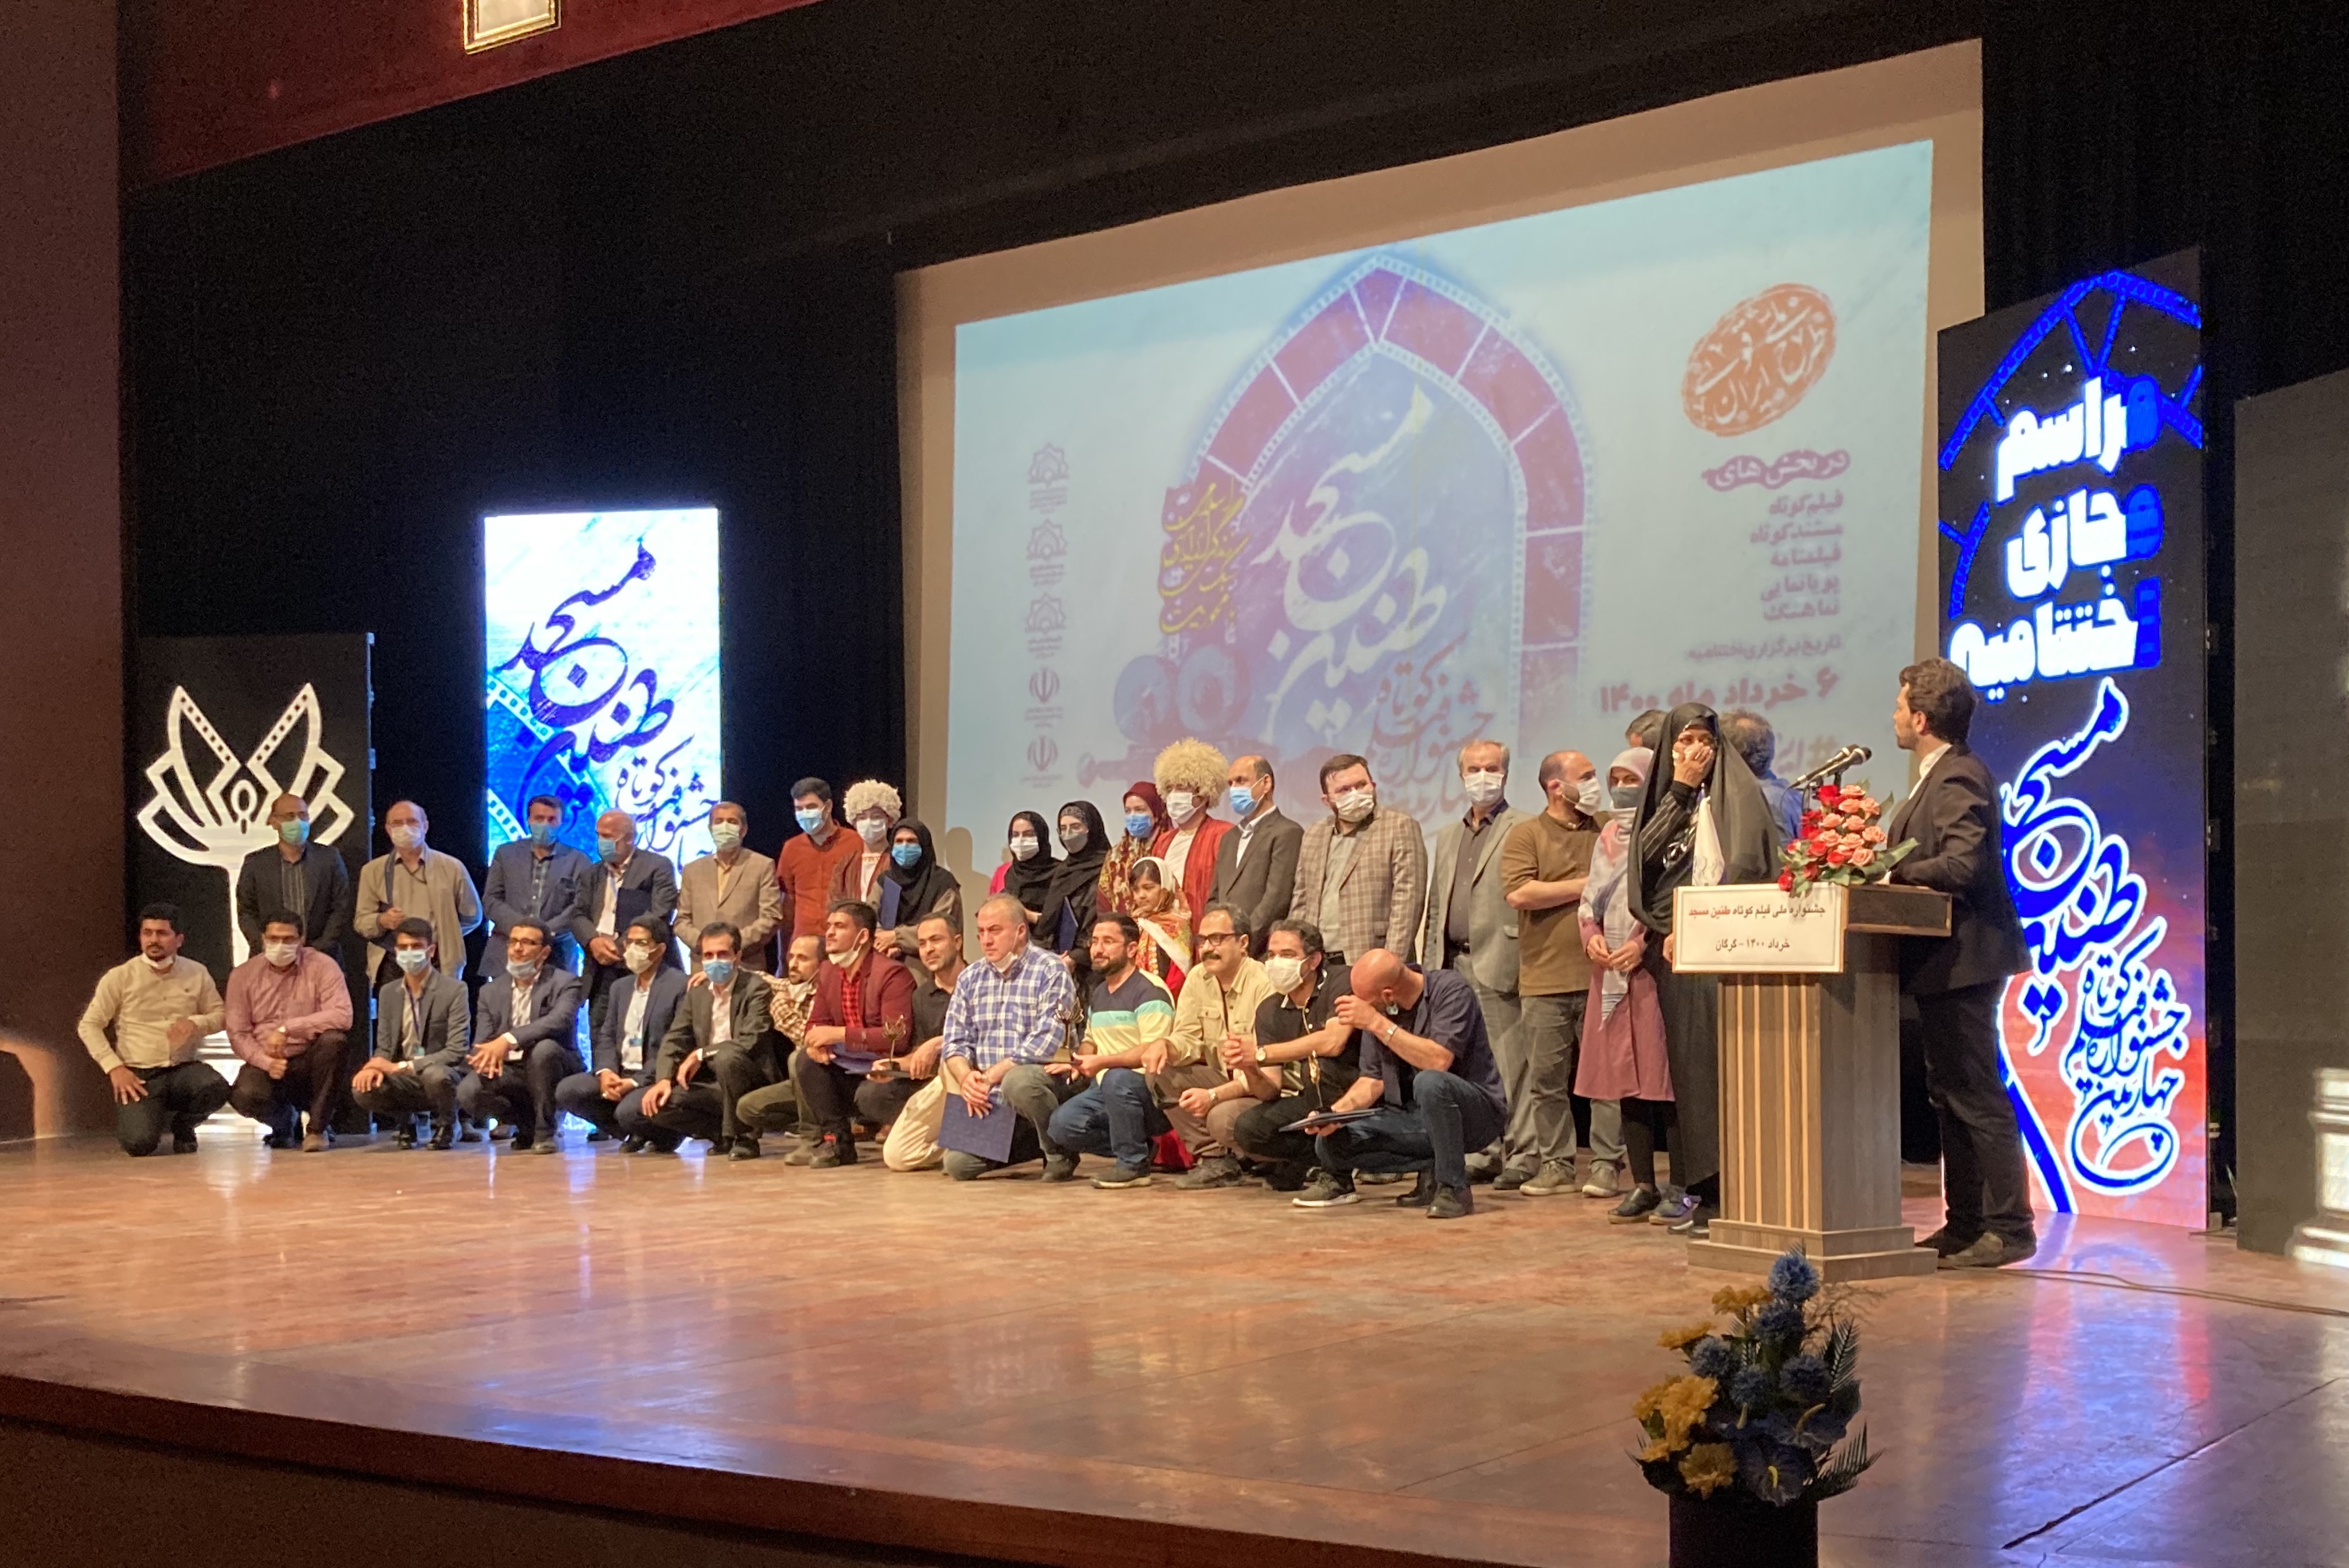 چهارمین جشنواره فیلم کوتاه طنین مسجد به کار خود پایان داد/ اسامی برگزیدگان  